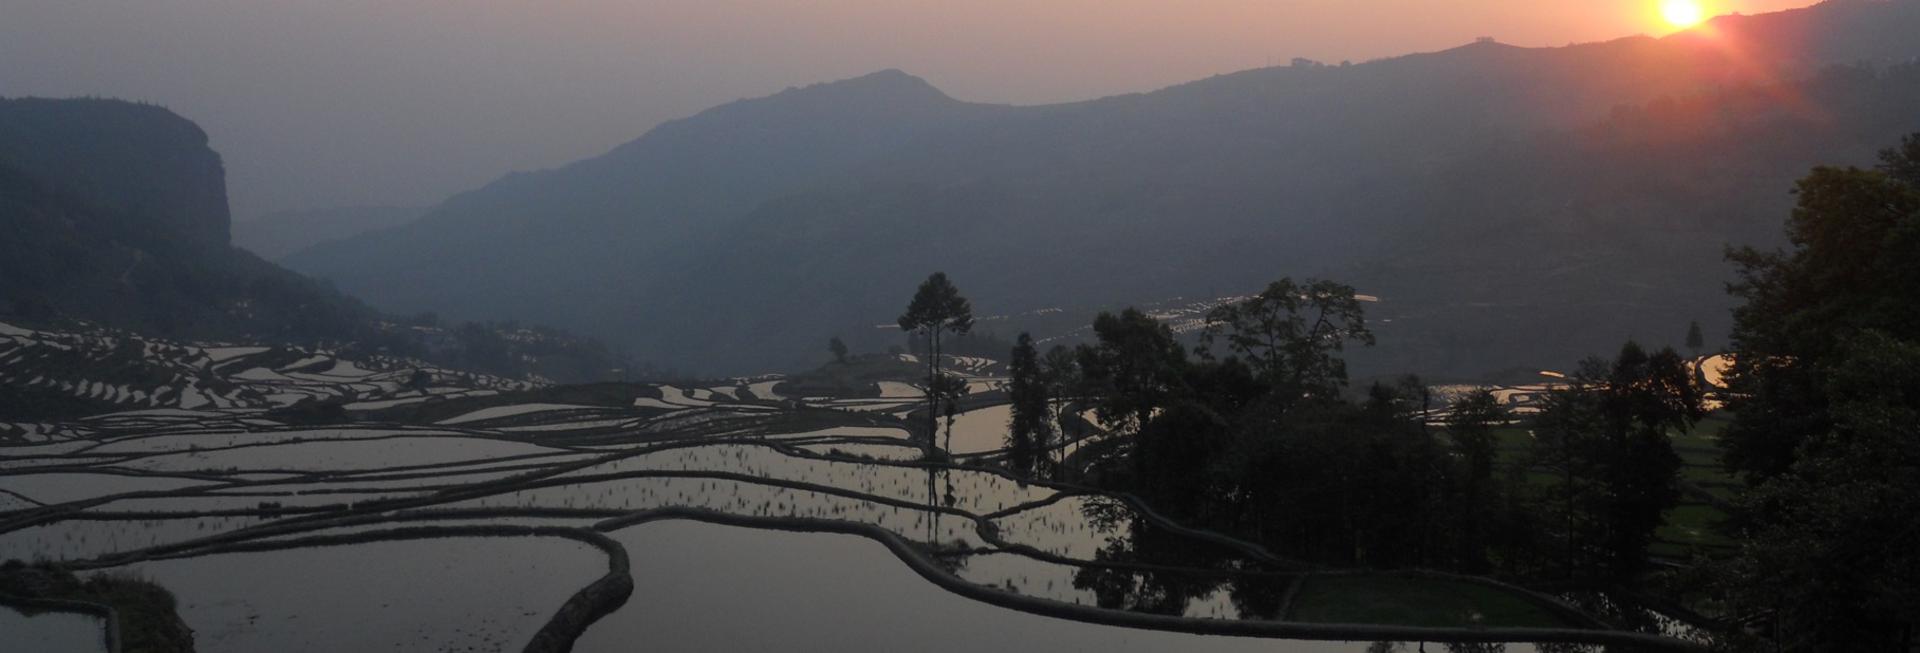 Sunrise sunset at Yuanyang rice terraces, Yunnan